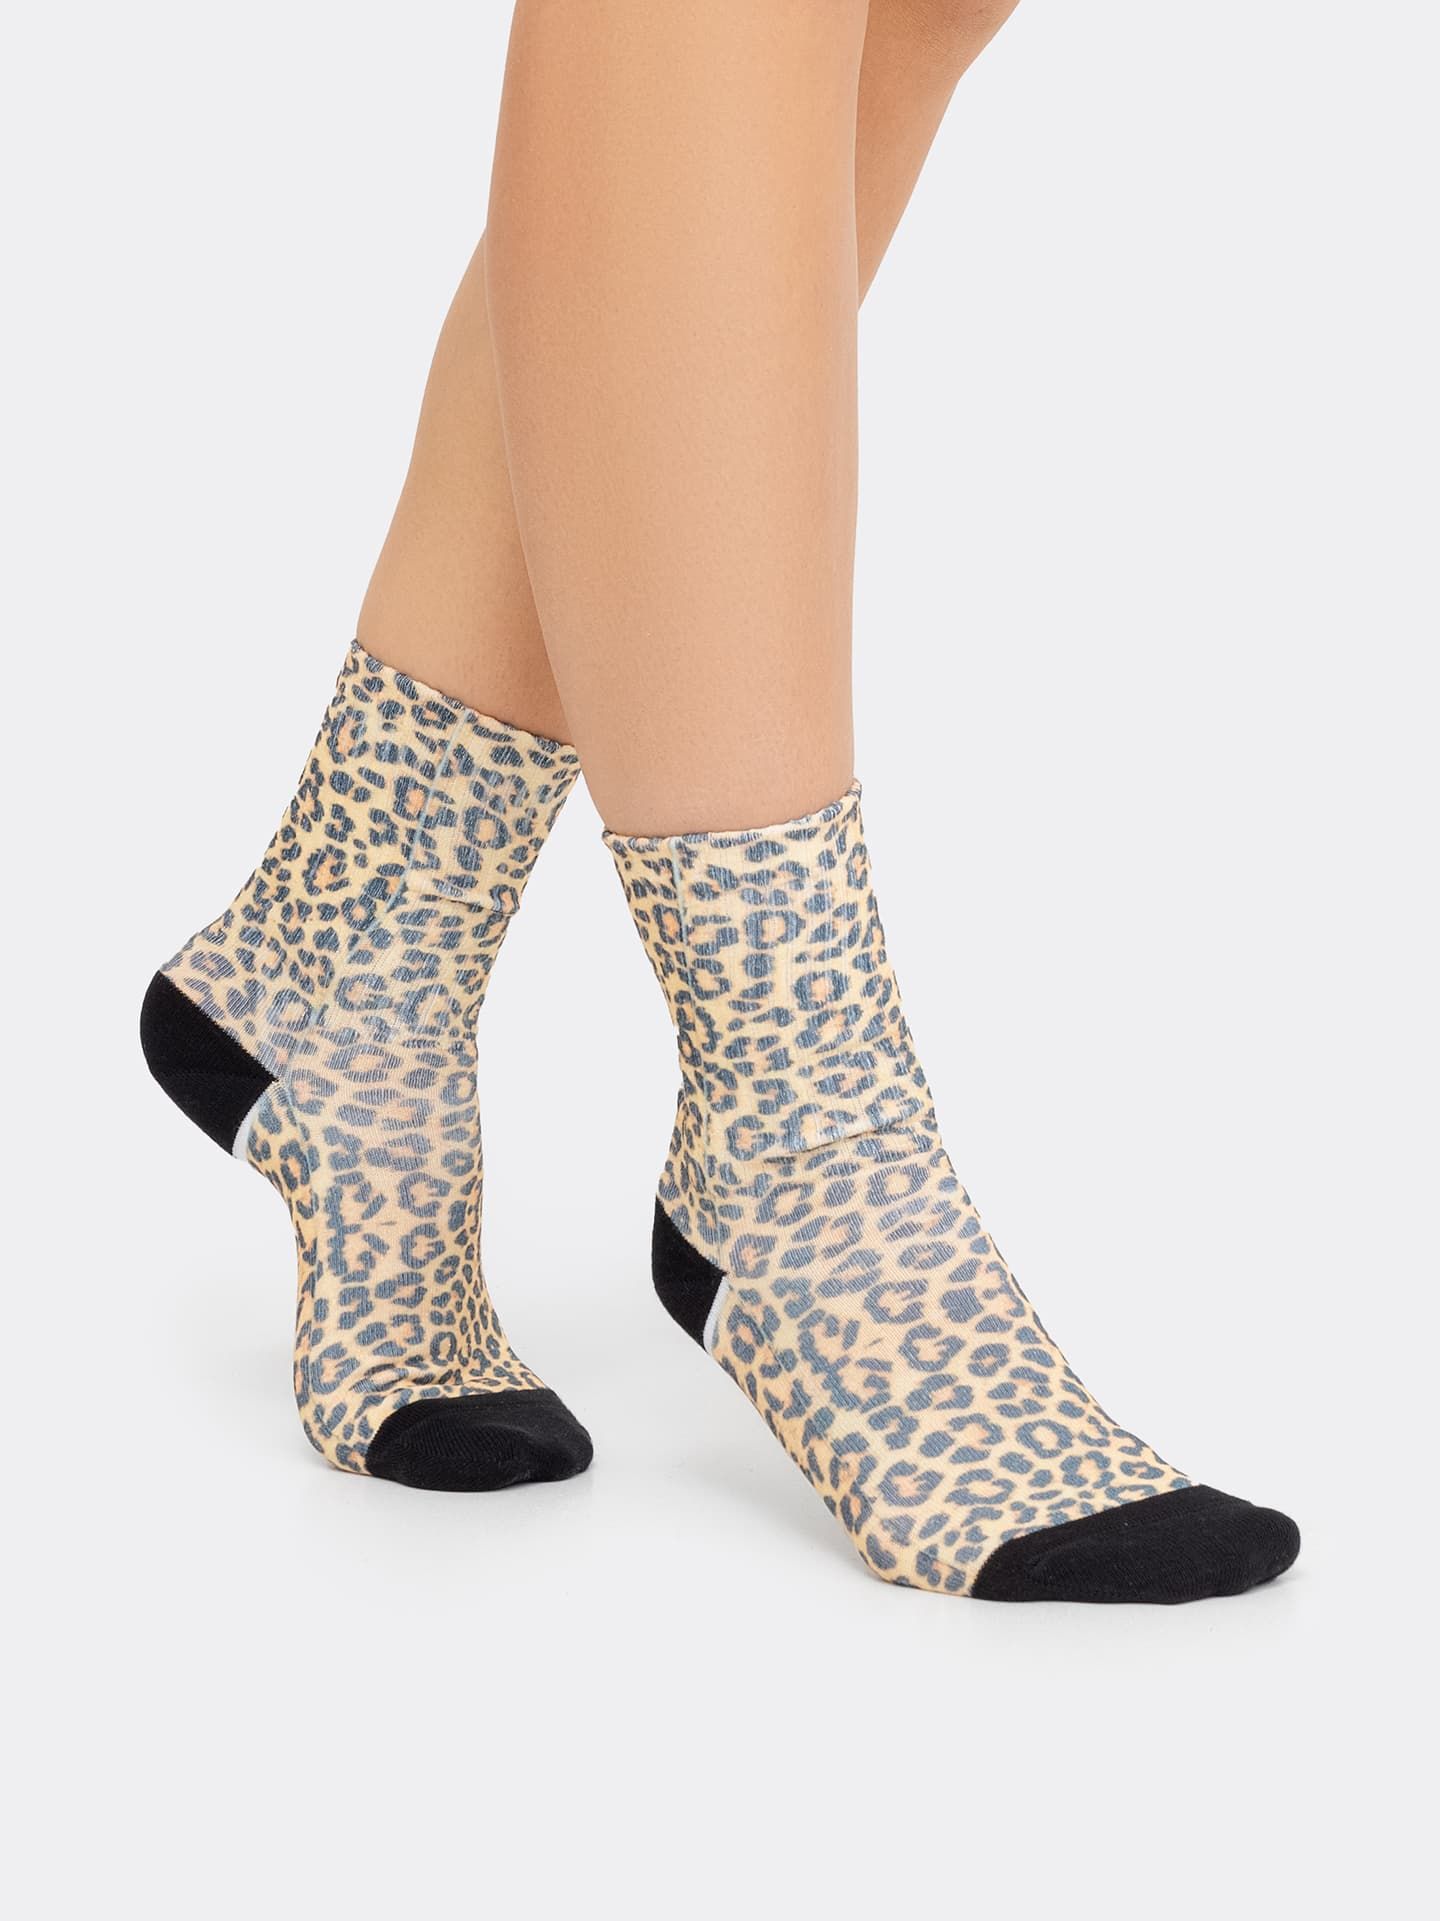 Высокие женские носки с леопардовым принтом